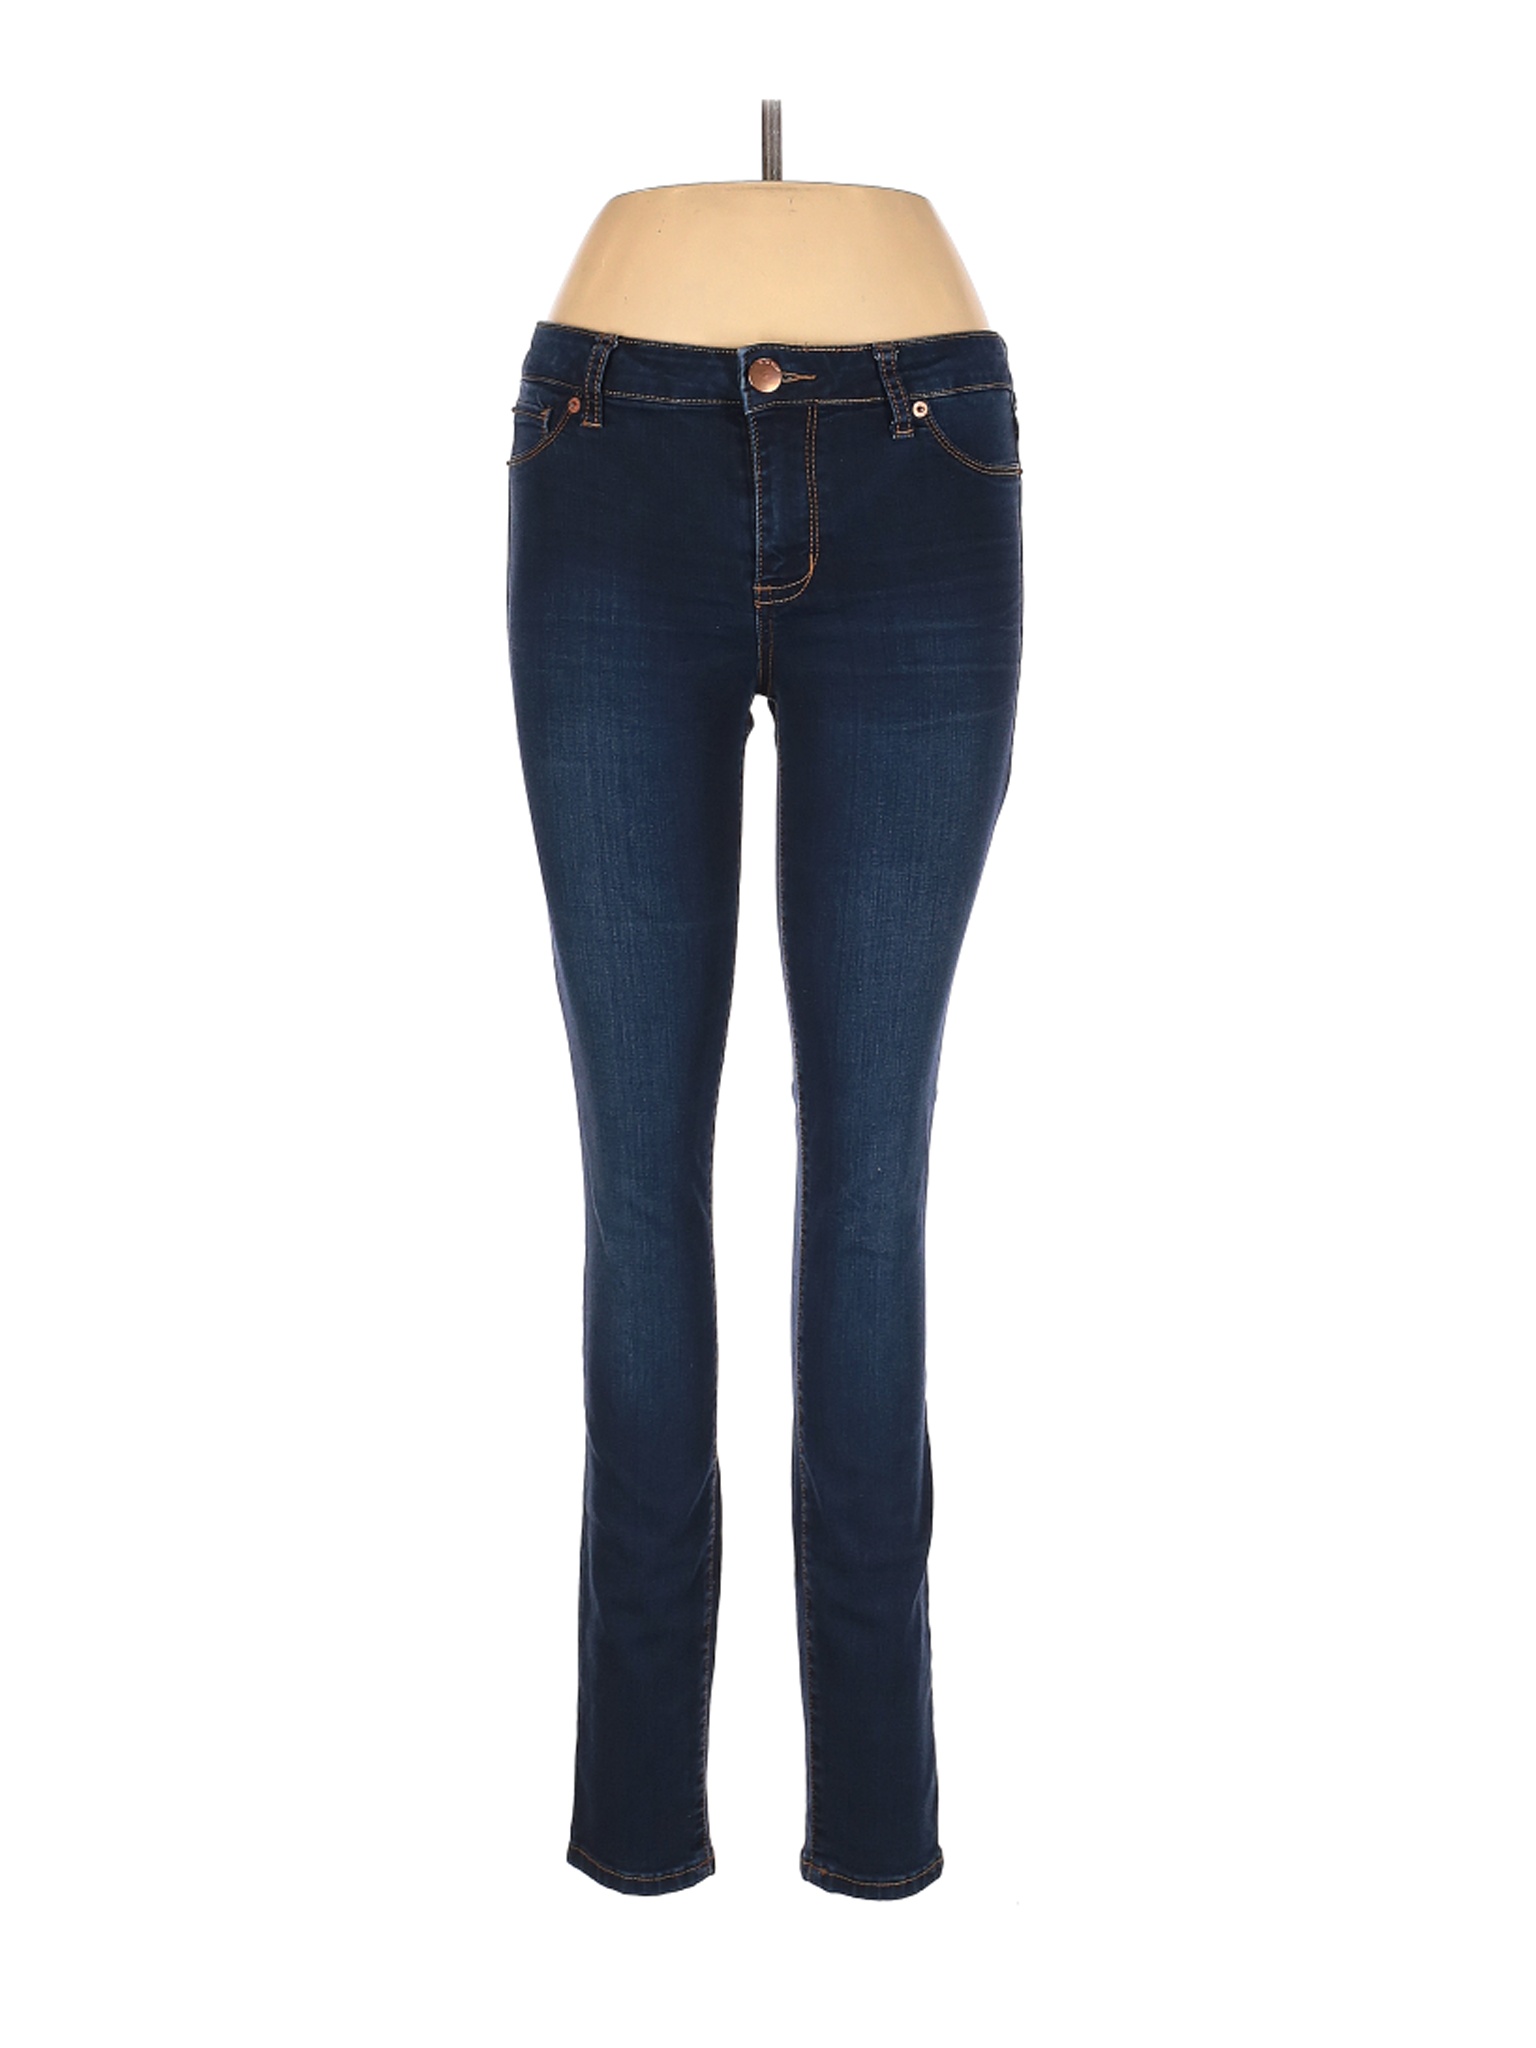 STS Blue Women Blue Jeans 7 | eBay